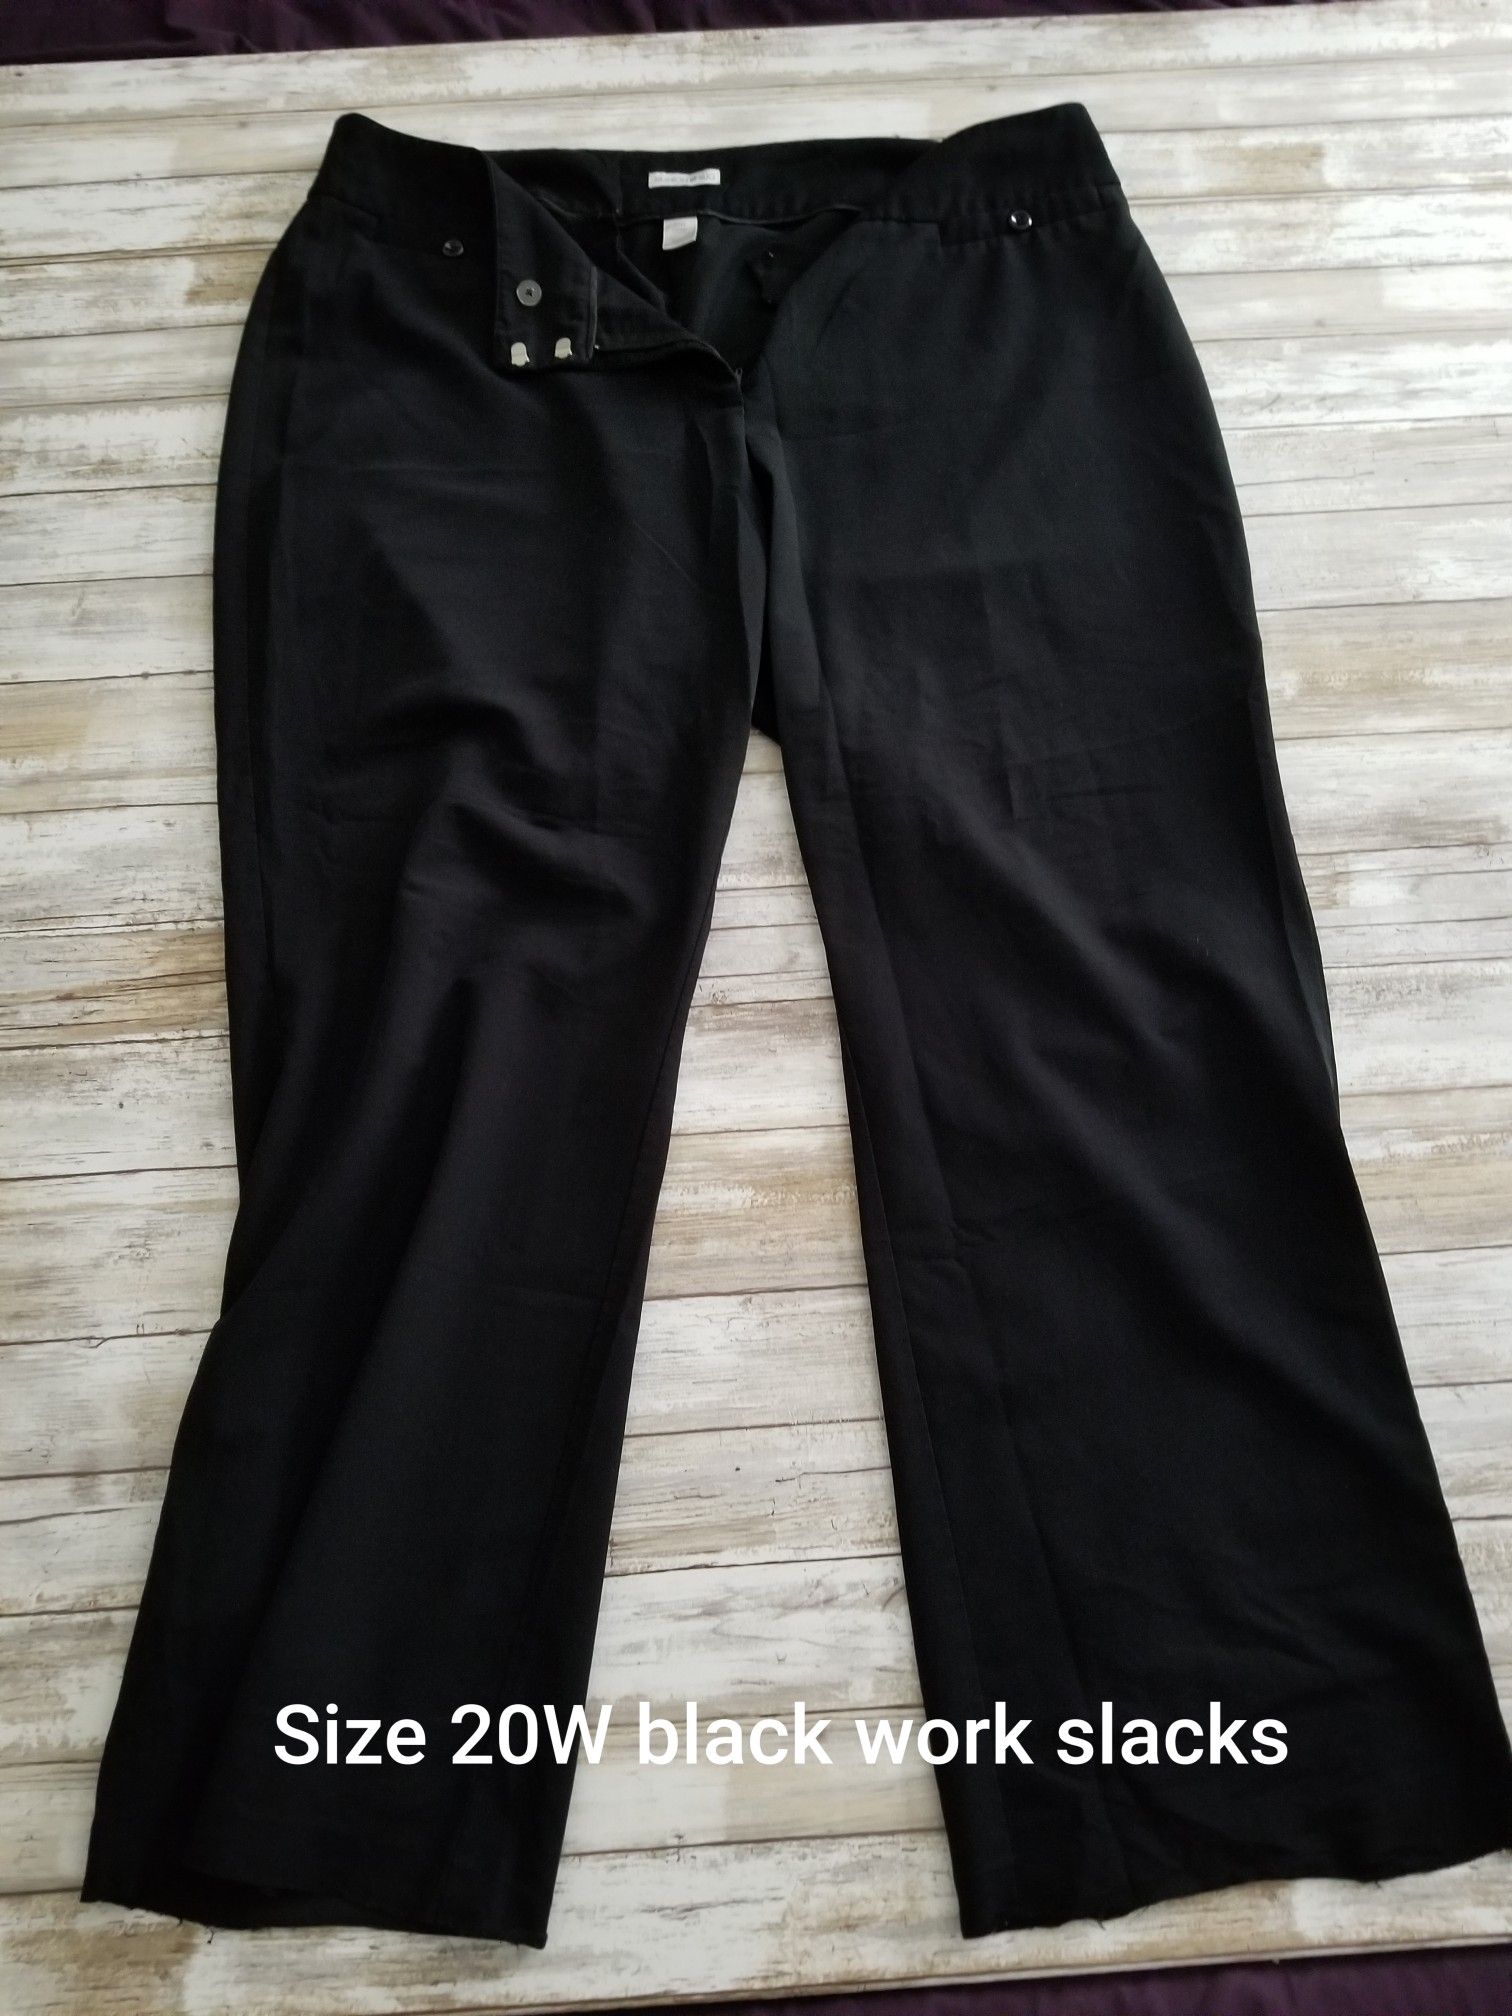 Size 20w black work pants